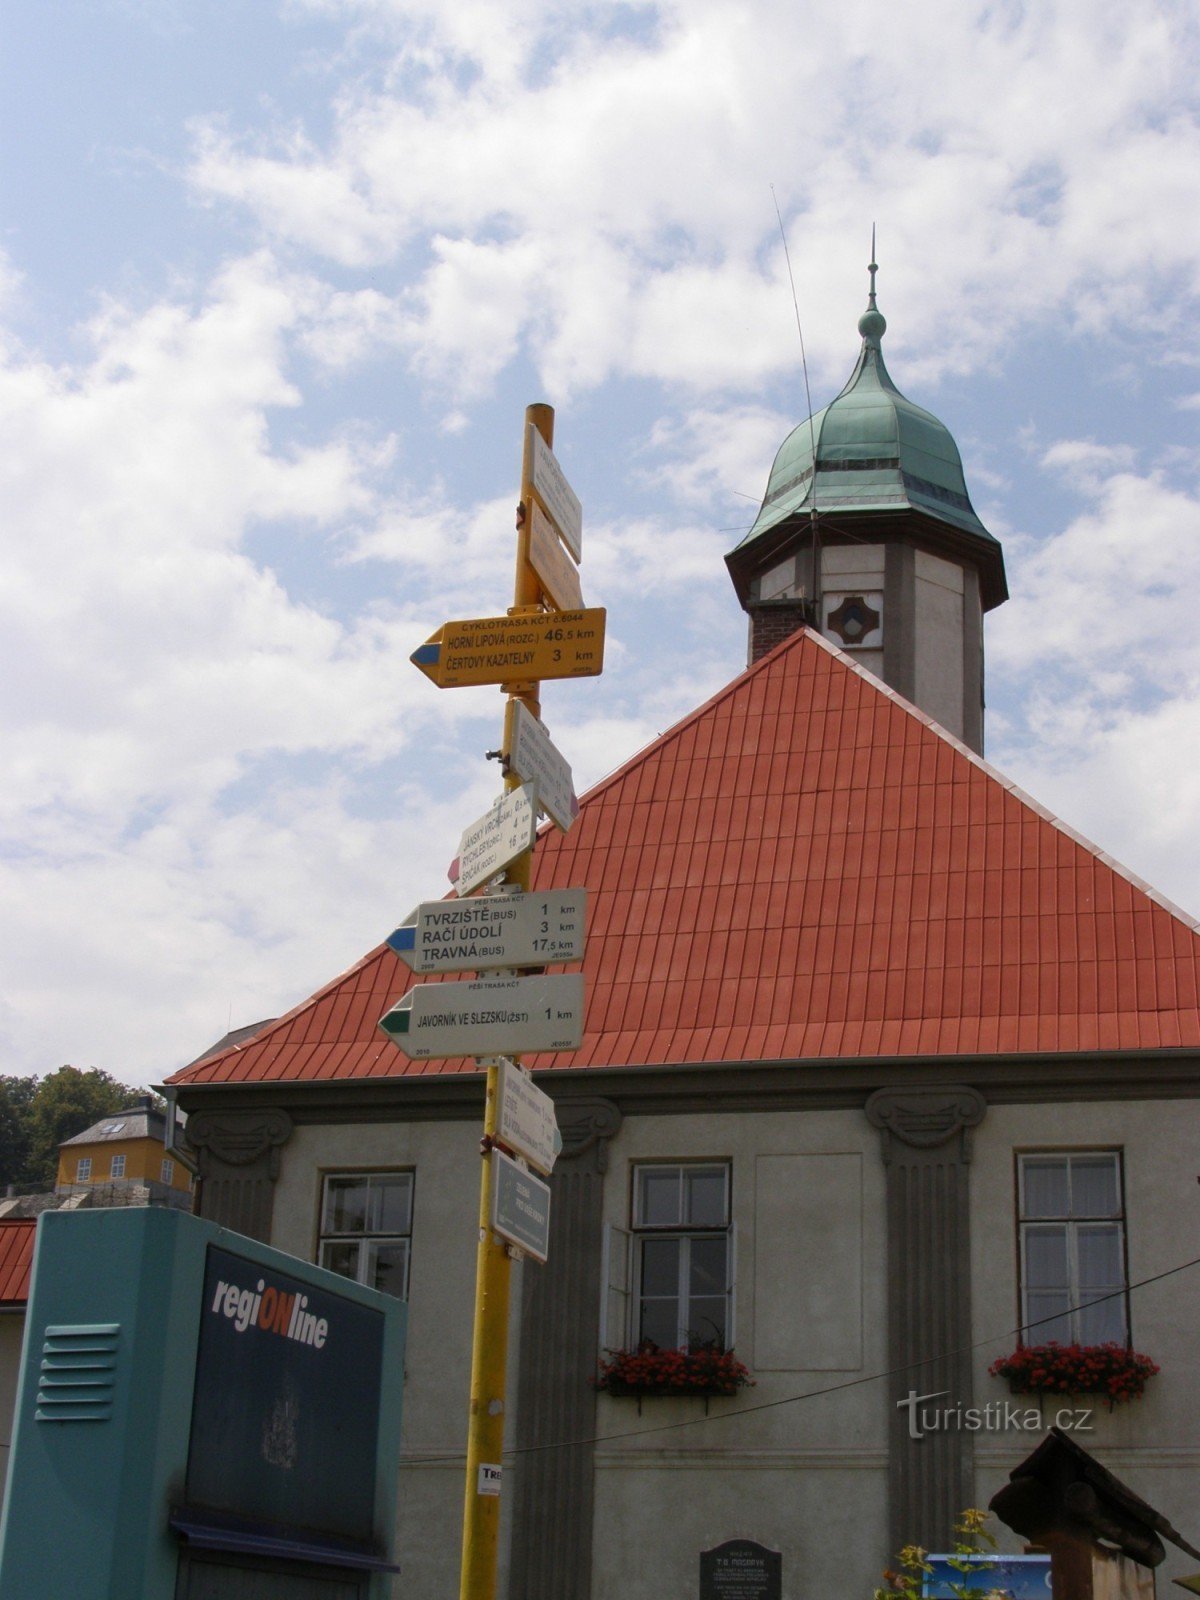 encrucijada turística Javorník - náměstí